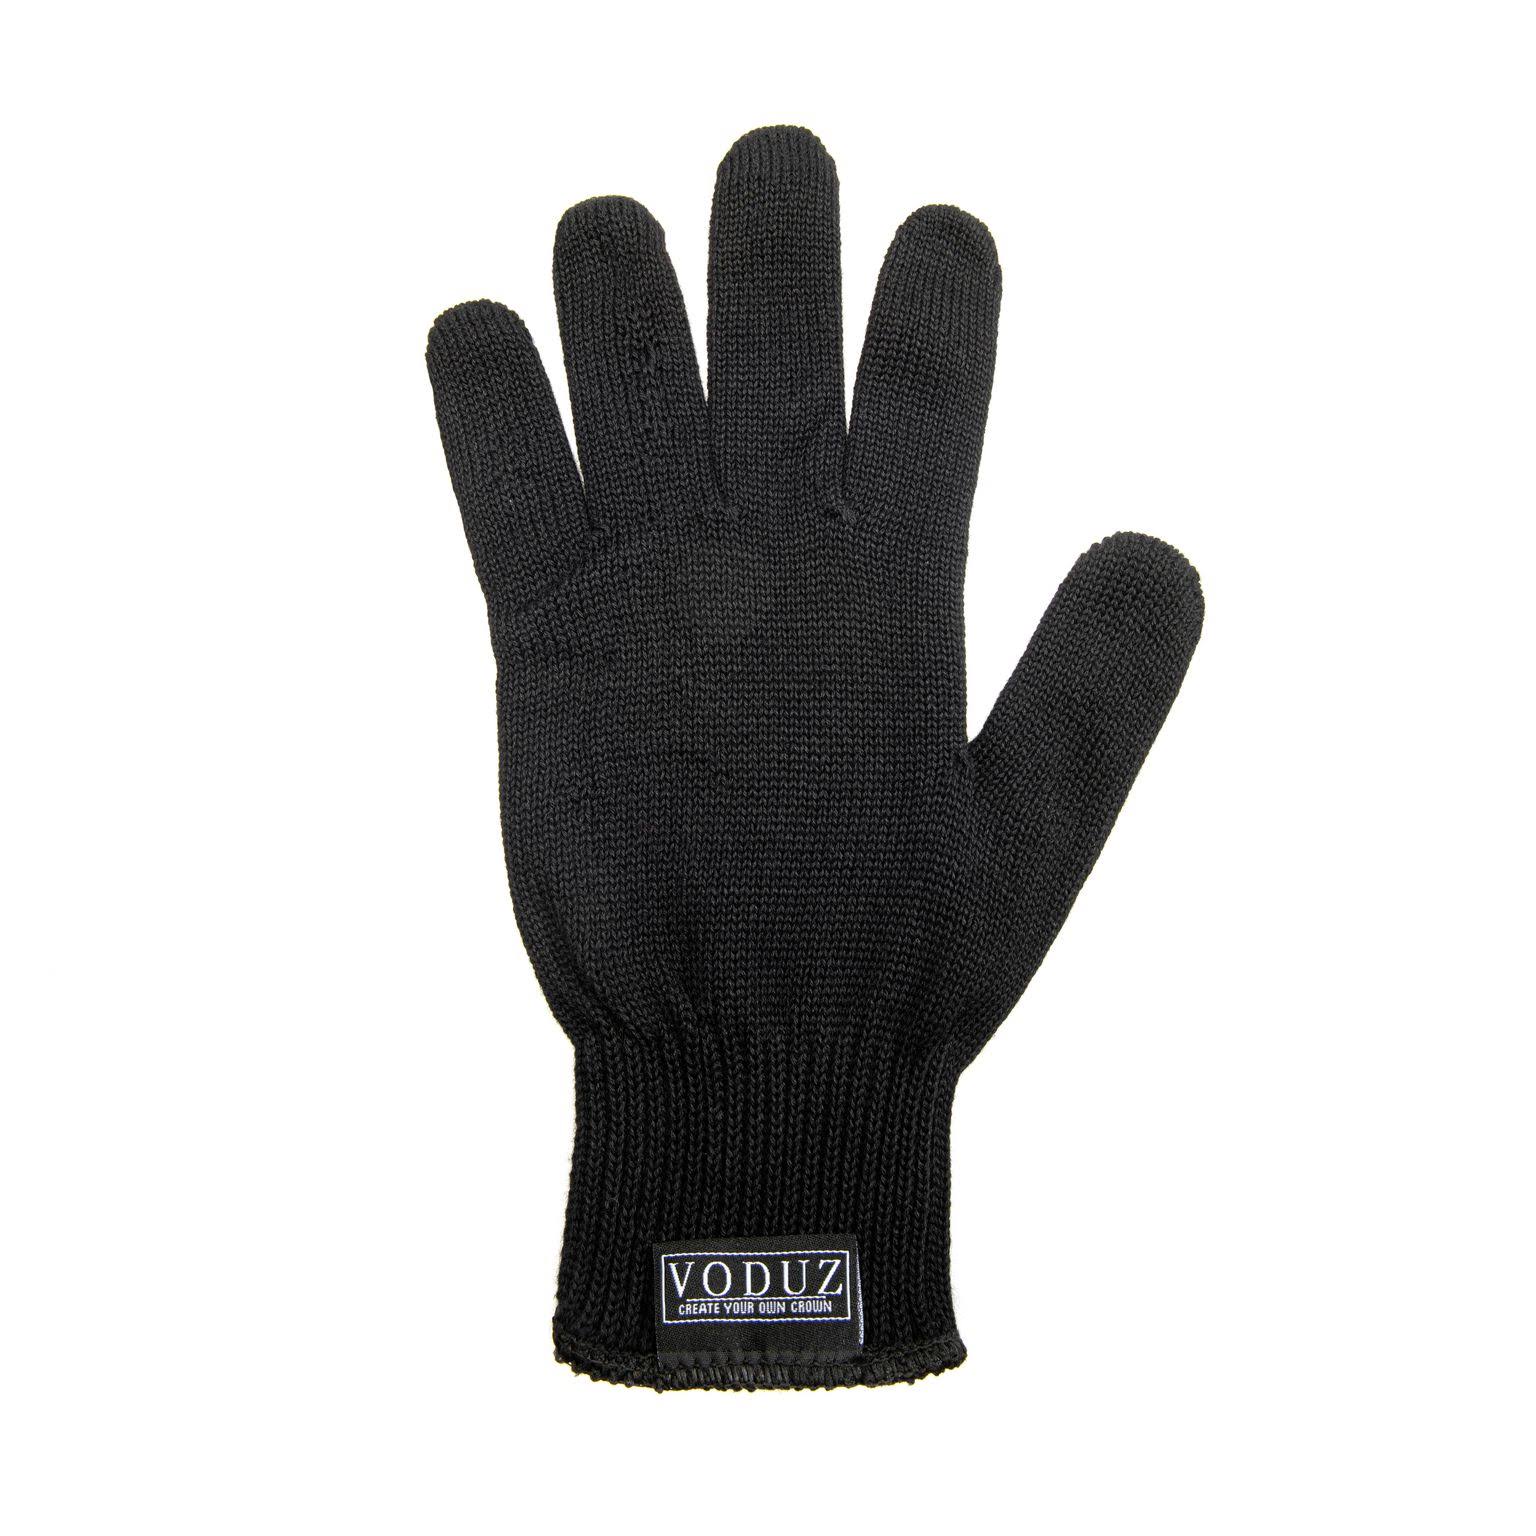 Voduz - Heat Protection Glove